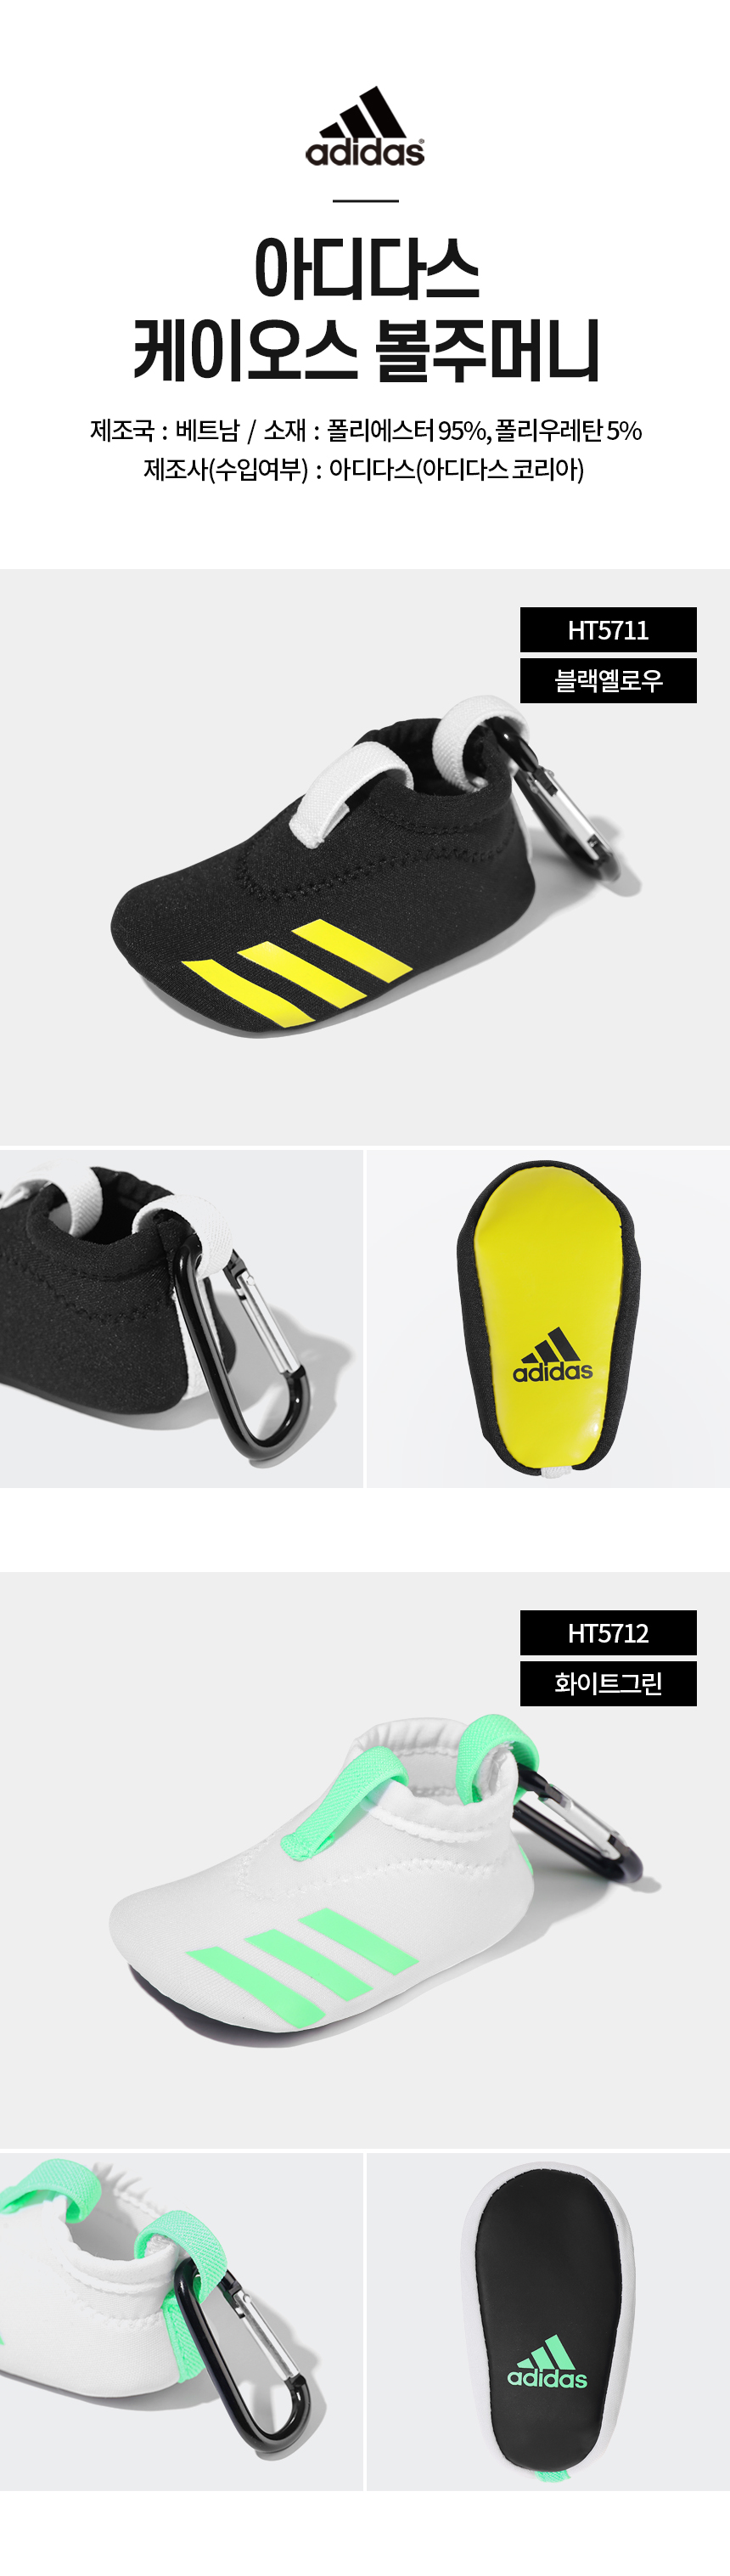 adidas_chaos_ballpouch_HT5711_HT5712_23.jpg